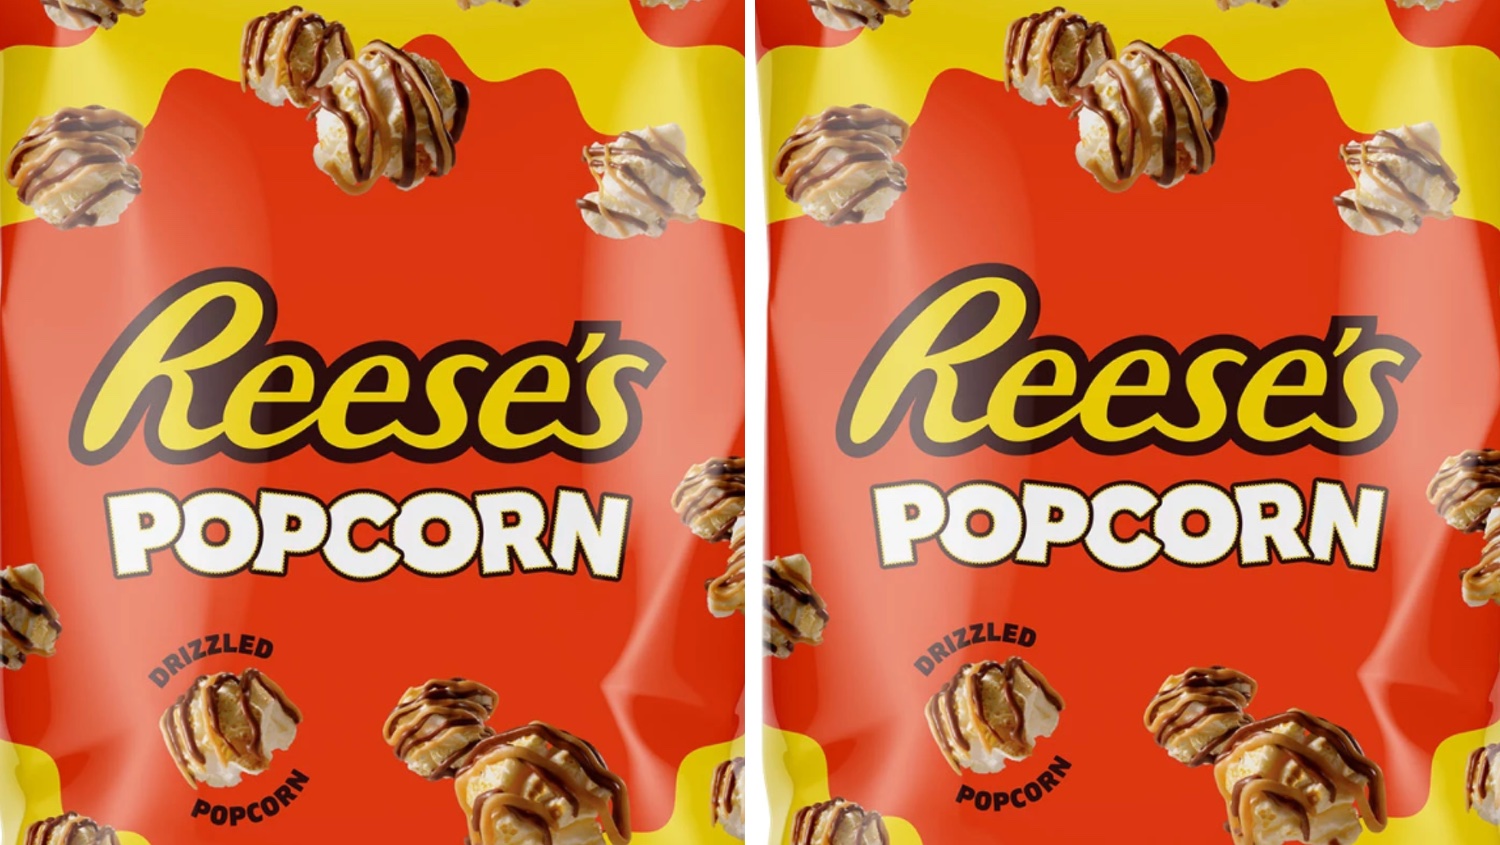 Reese's popcorn